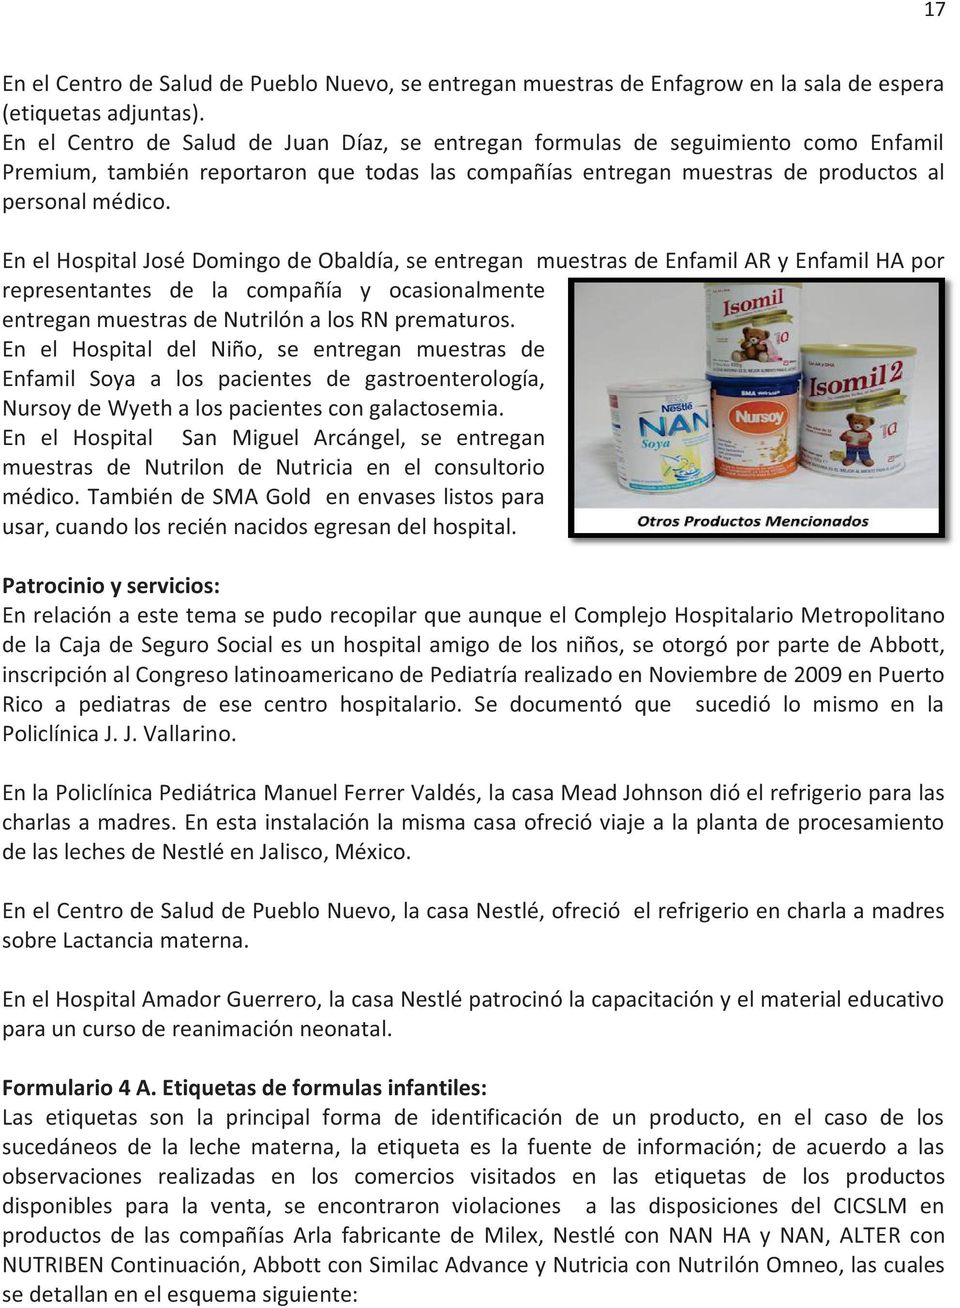 En el Hospital José Domingo de Obaldía, se entregan muestras de Enfamil AR y Enfamil HA por representantes de la compañía y ocasionalmente entregan muestras de Nutrilón a los RN prematuros.